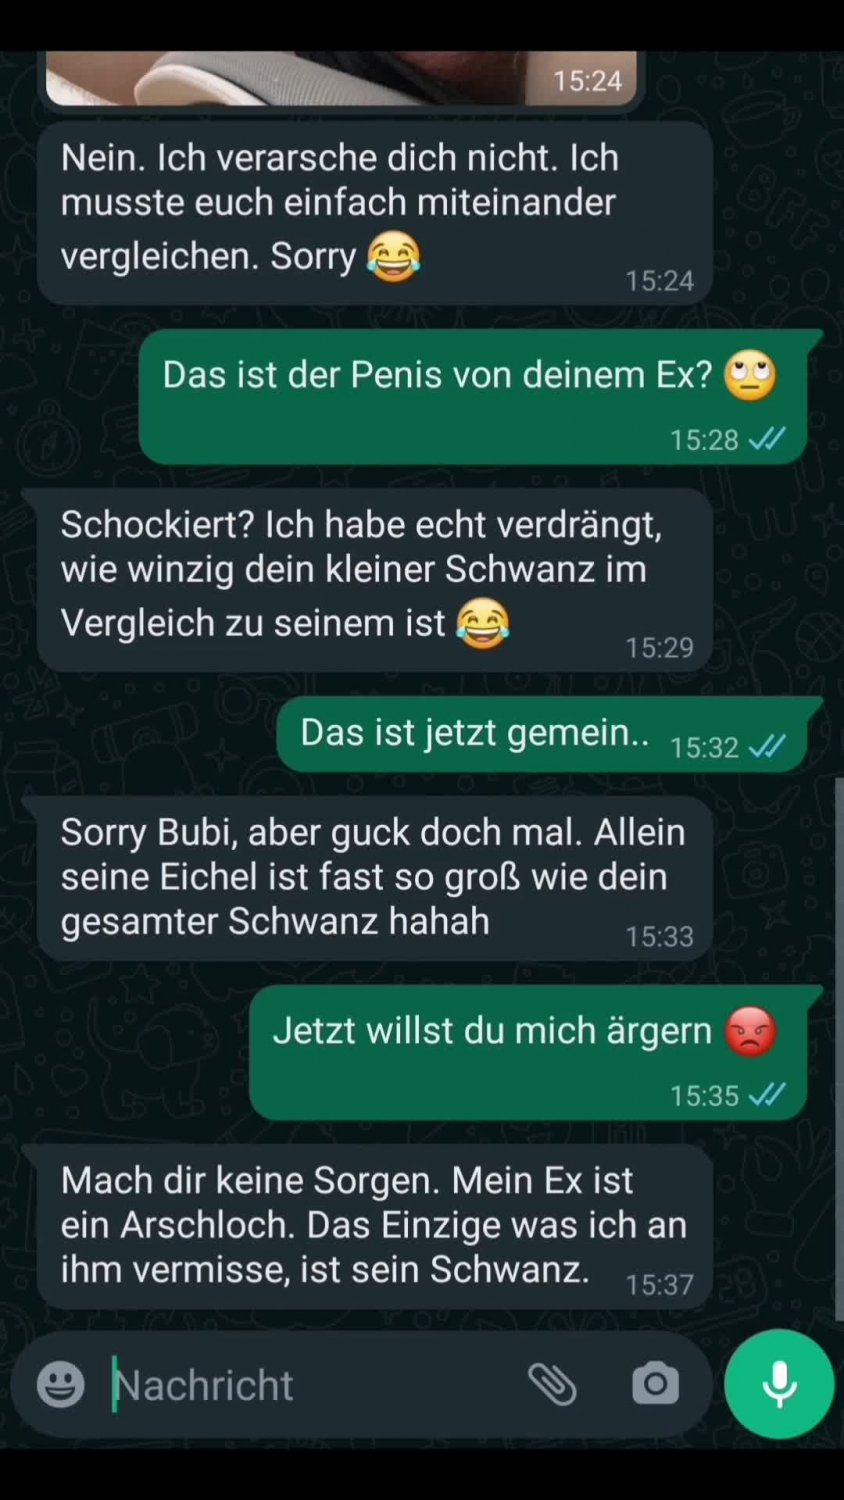 cuckold dirty talk deutsch Sex Pics Hd